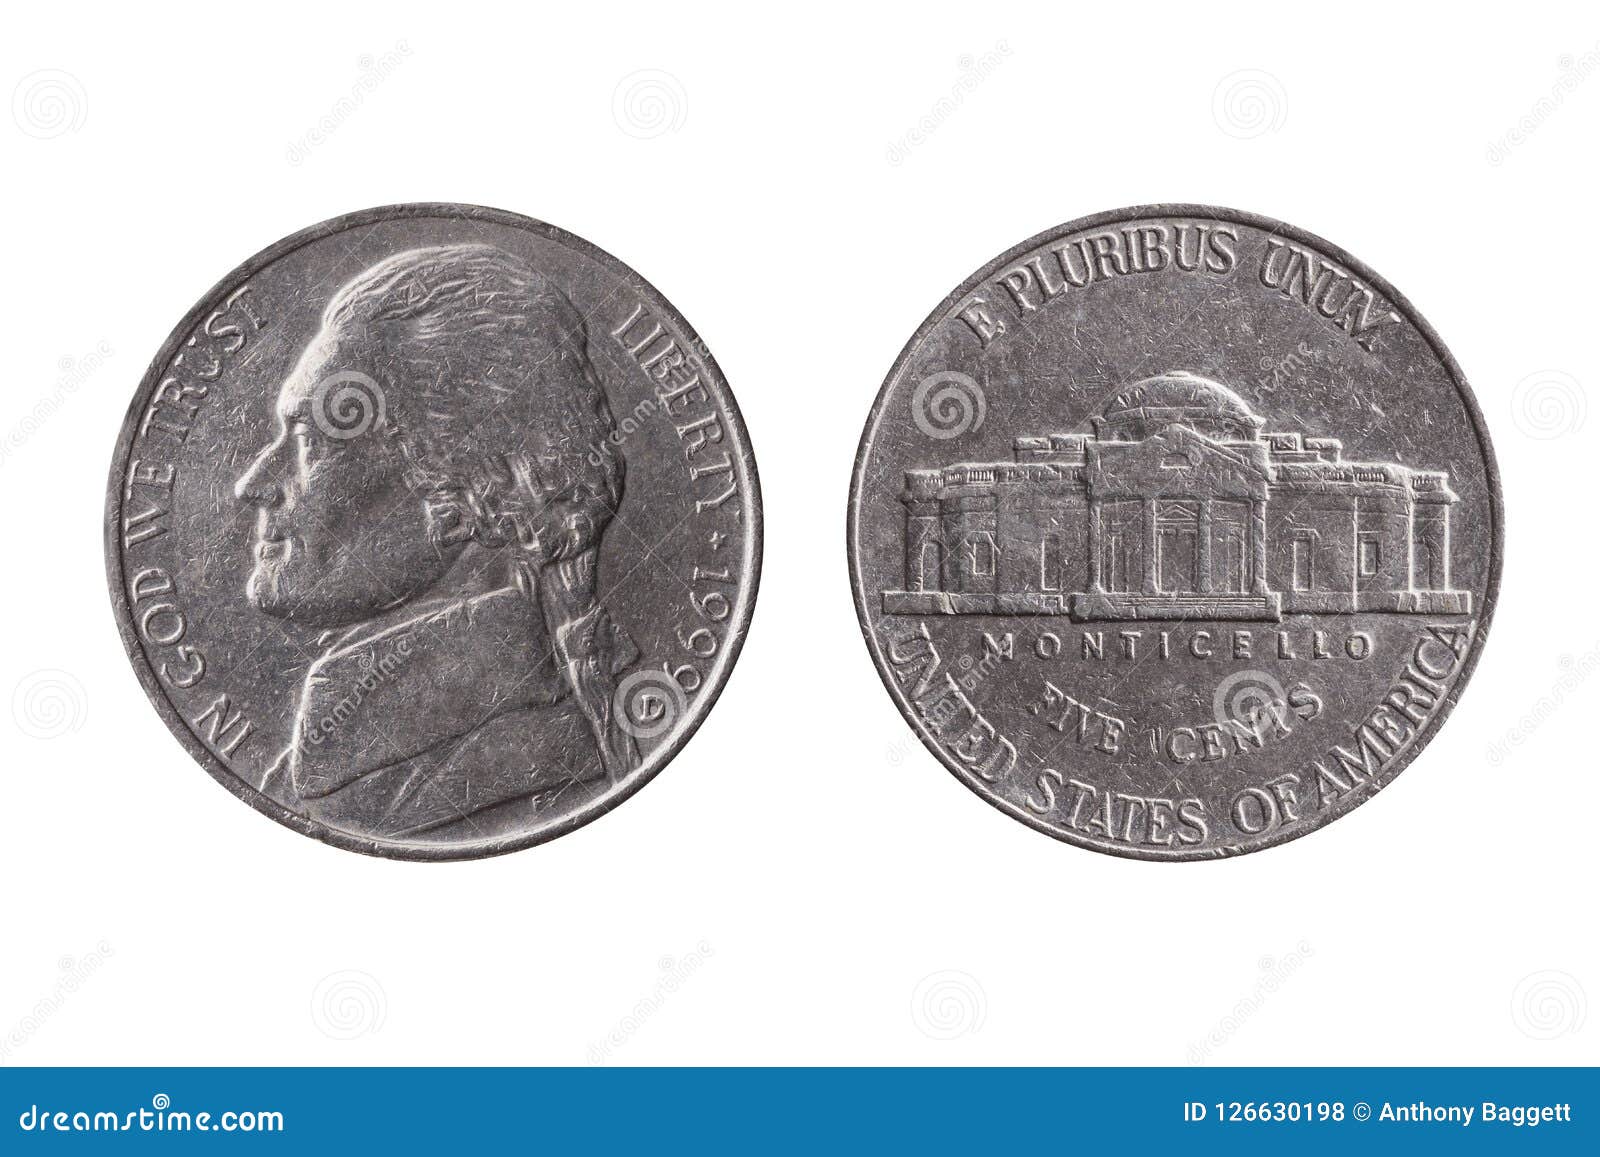 Groschen-Nickelmünze USA halbe 25 Cents mit einem Porträtbild von Thomas Jefferson-Gegenstücck und von Montecello-Rückseite herausgeschnitten und auf einem weißen Hintergrund lokalisiert